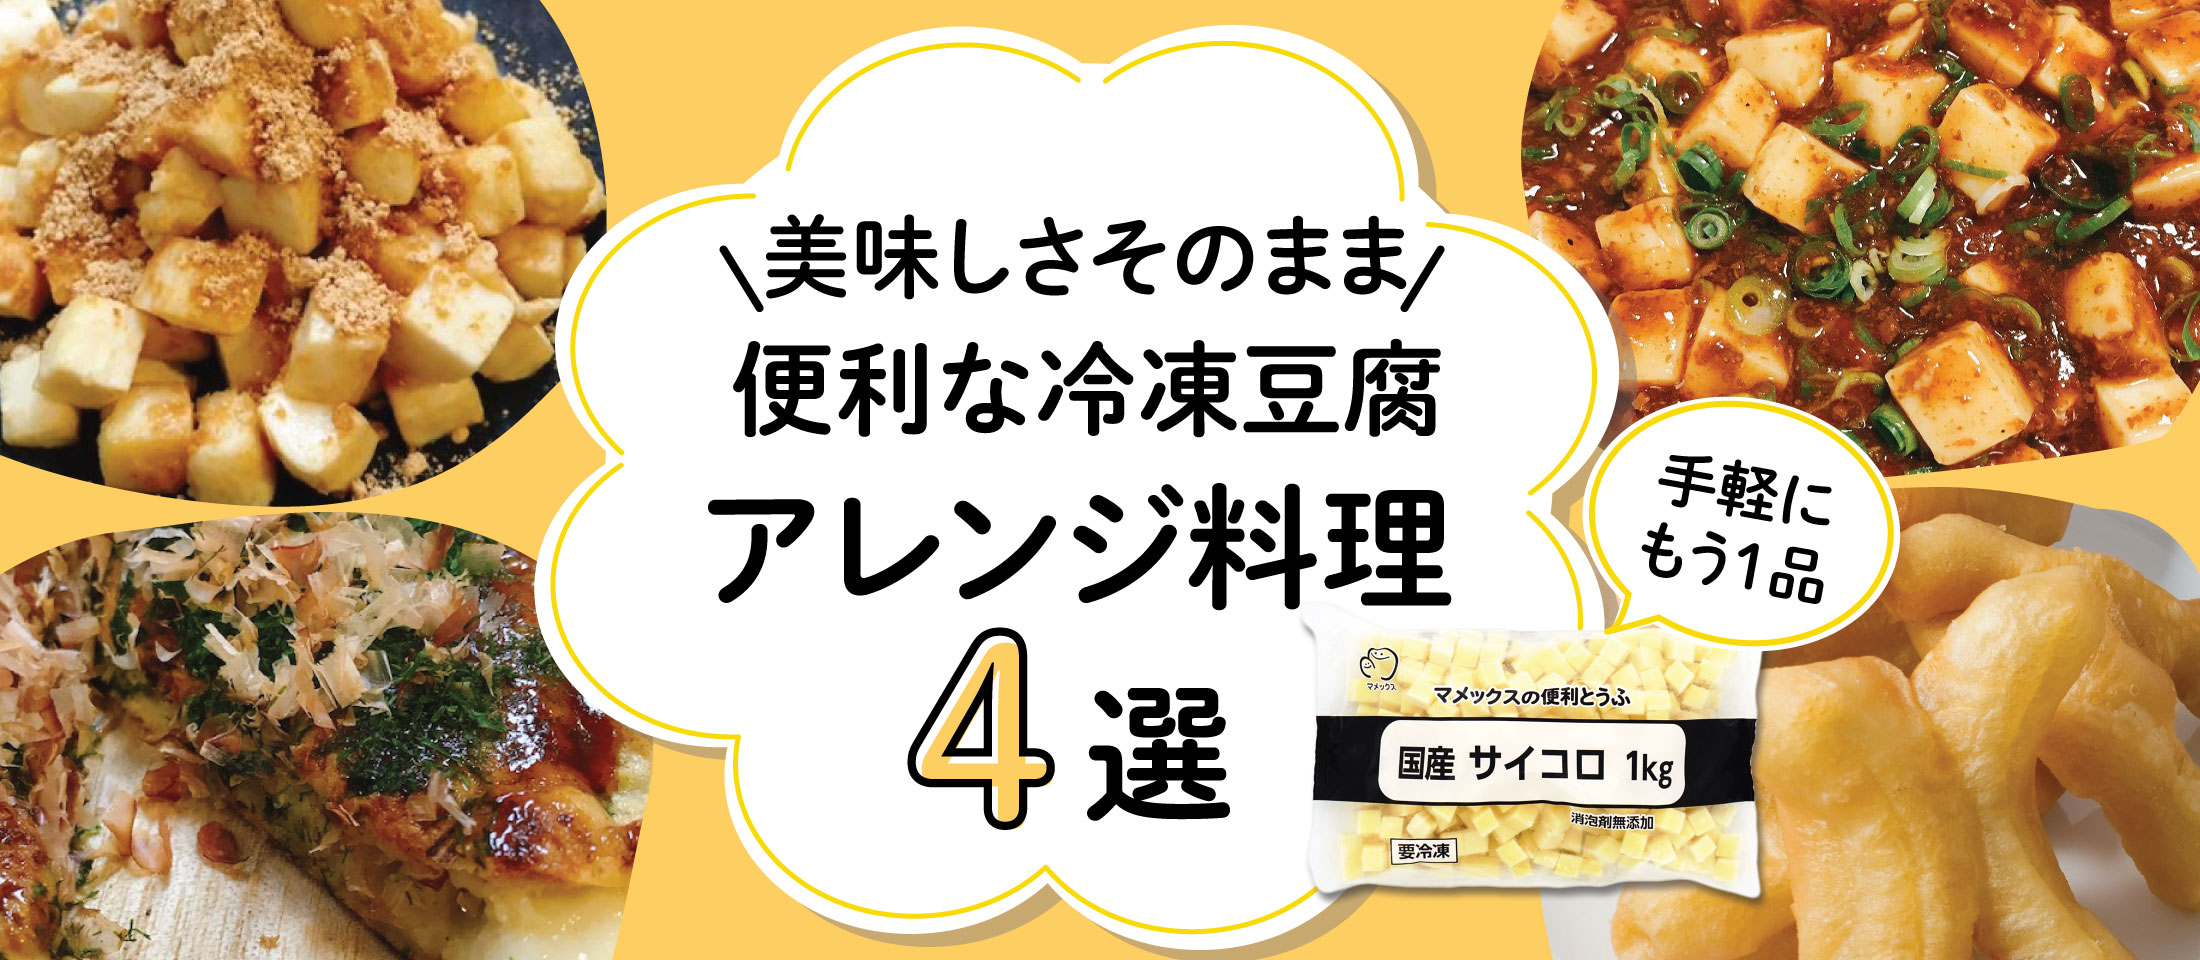 便利な冷凍豆腐でアレンジ料理特集4選 業務用食品・冷凍食品通販 ナカヤマフーズオンライン